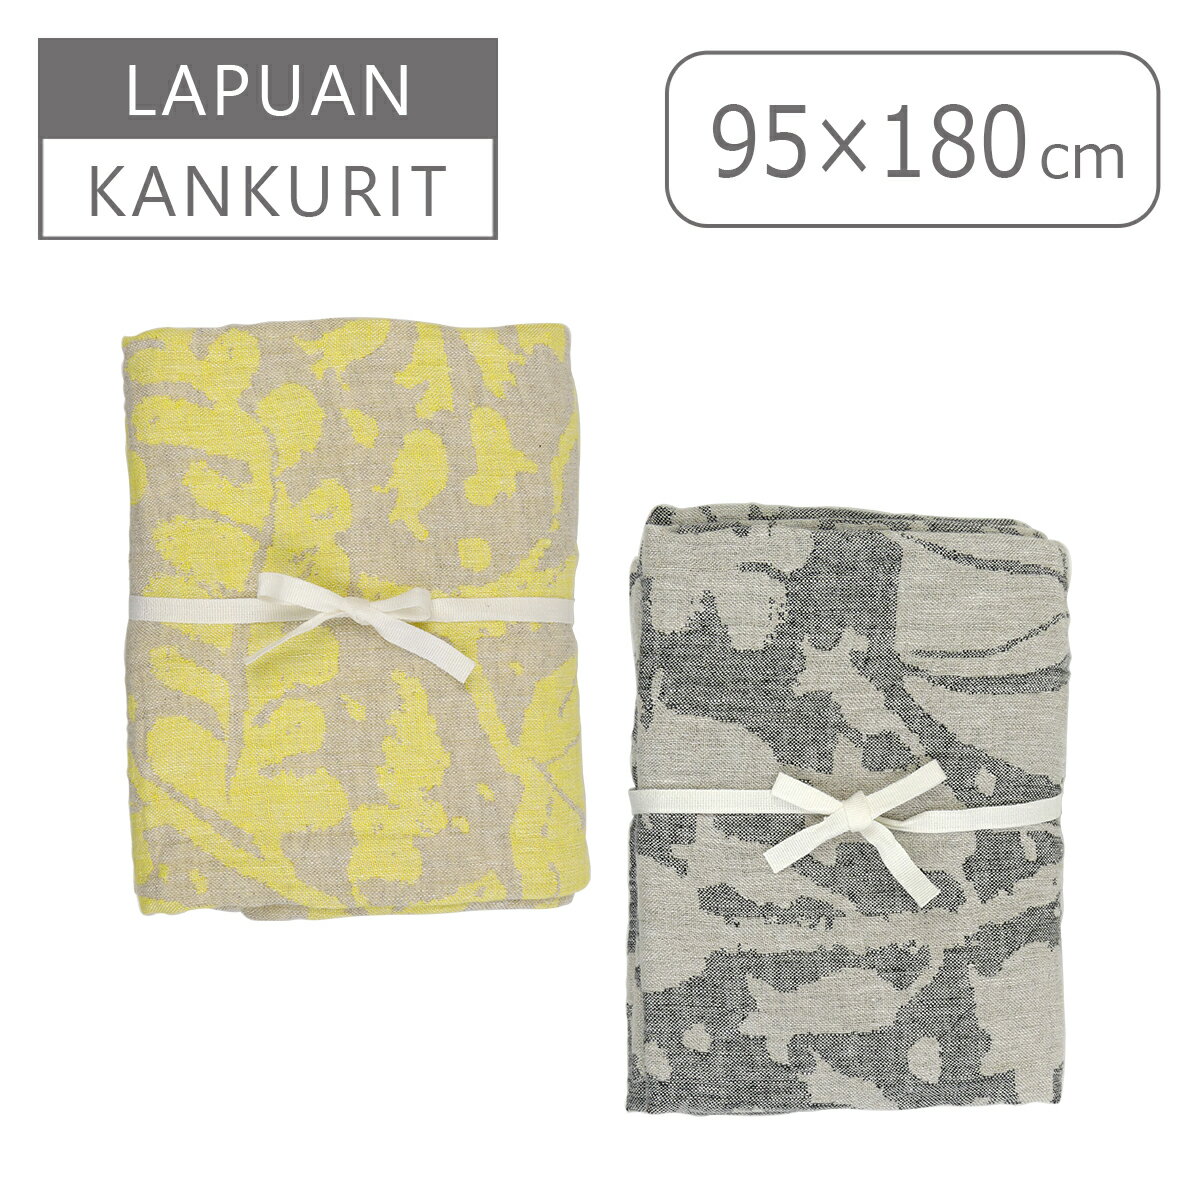 タオルセット（売れ筋ランキング） Lapuan Kankurit（ラプアンカンクリ） VILLIYRTIT タオル 95x180 ウォッシュドリネン ヴィッリウルティット マルチユースタオル towel 北欧 フィンランド ギフト可